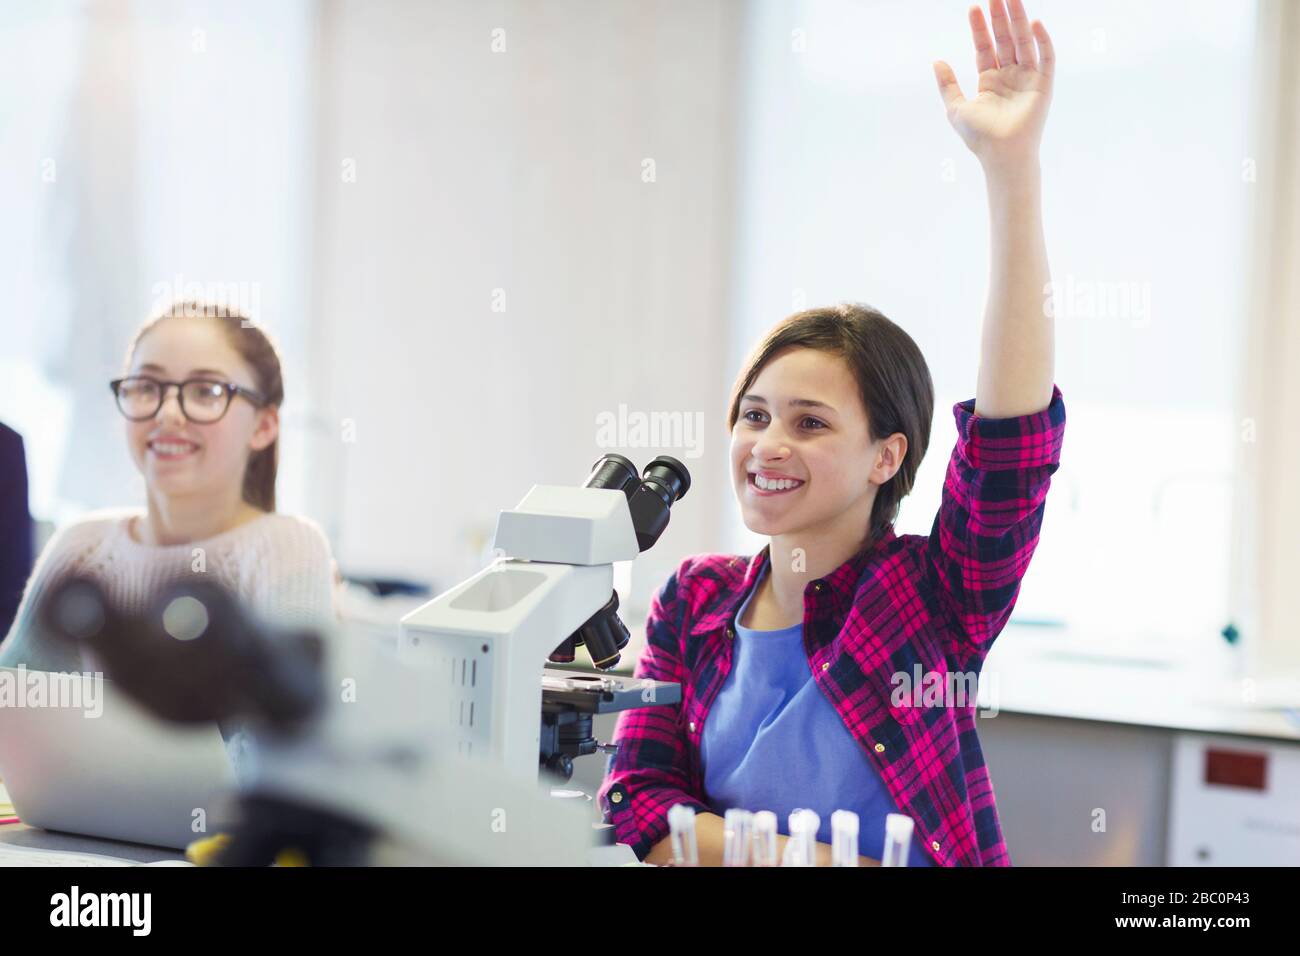 Estudiante sonriente haciendo una pregunta detrás del microscopio en el laboratorio del salón de clases Foto de stock